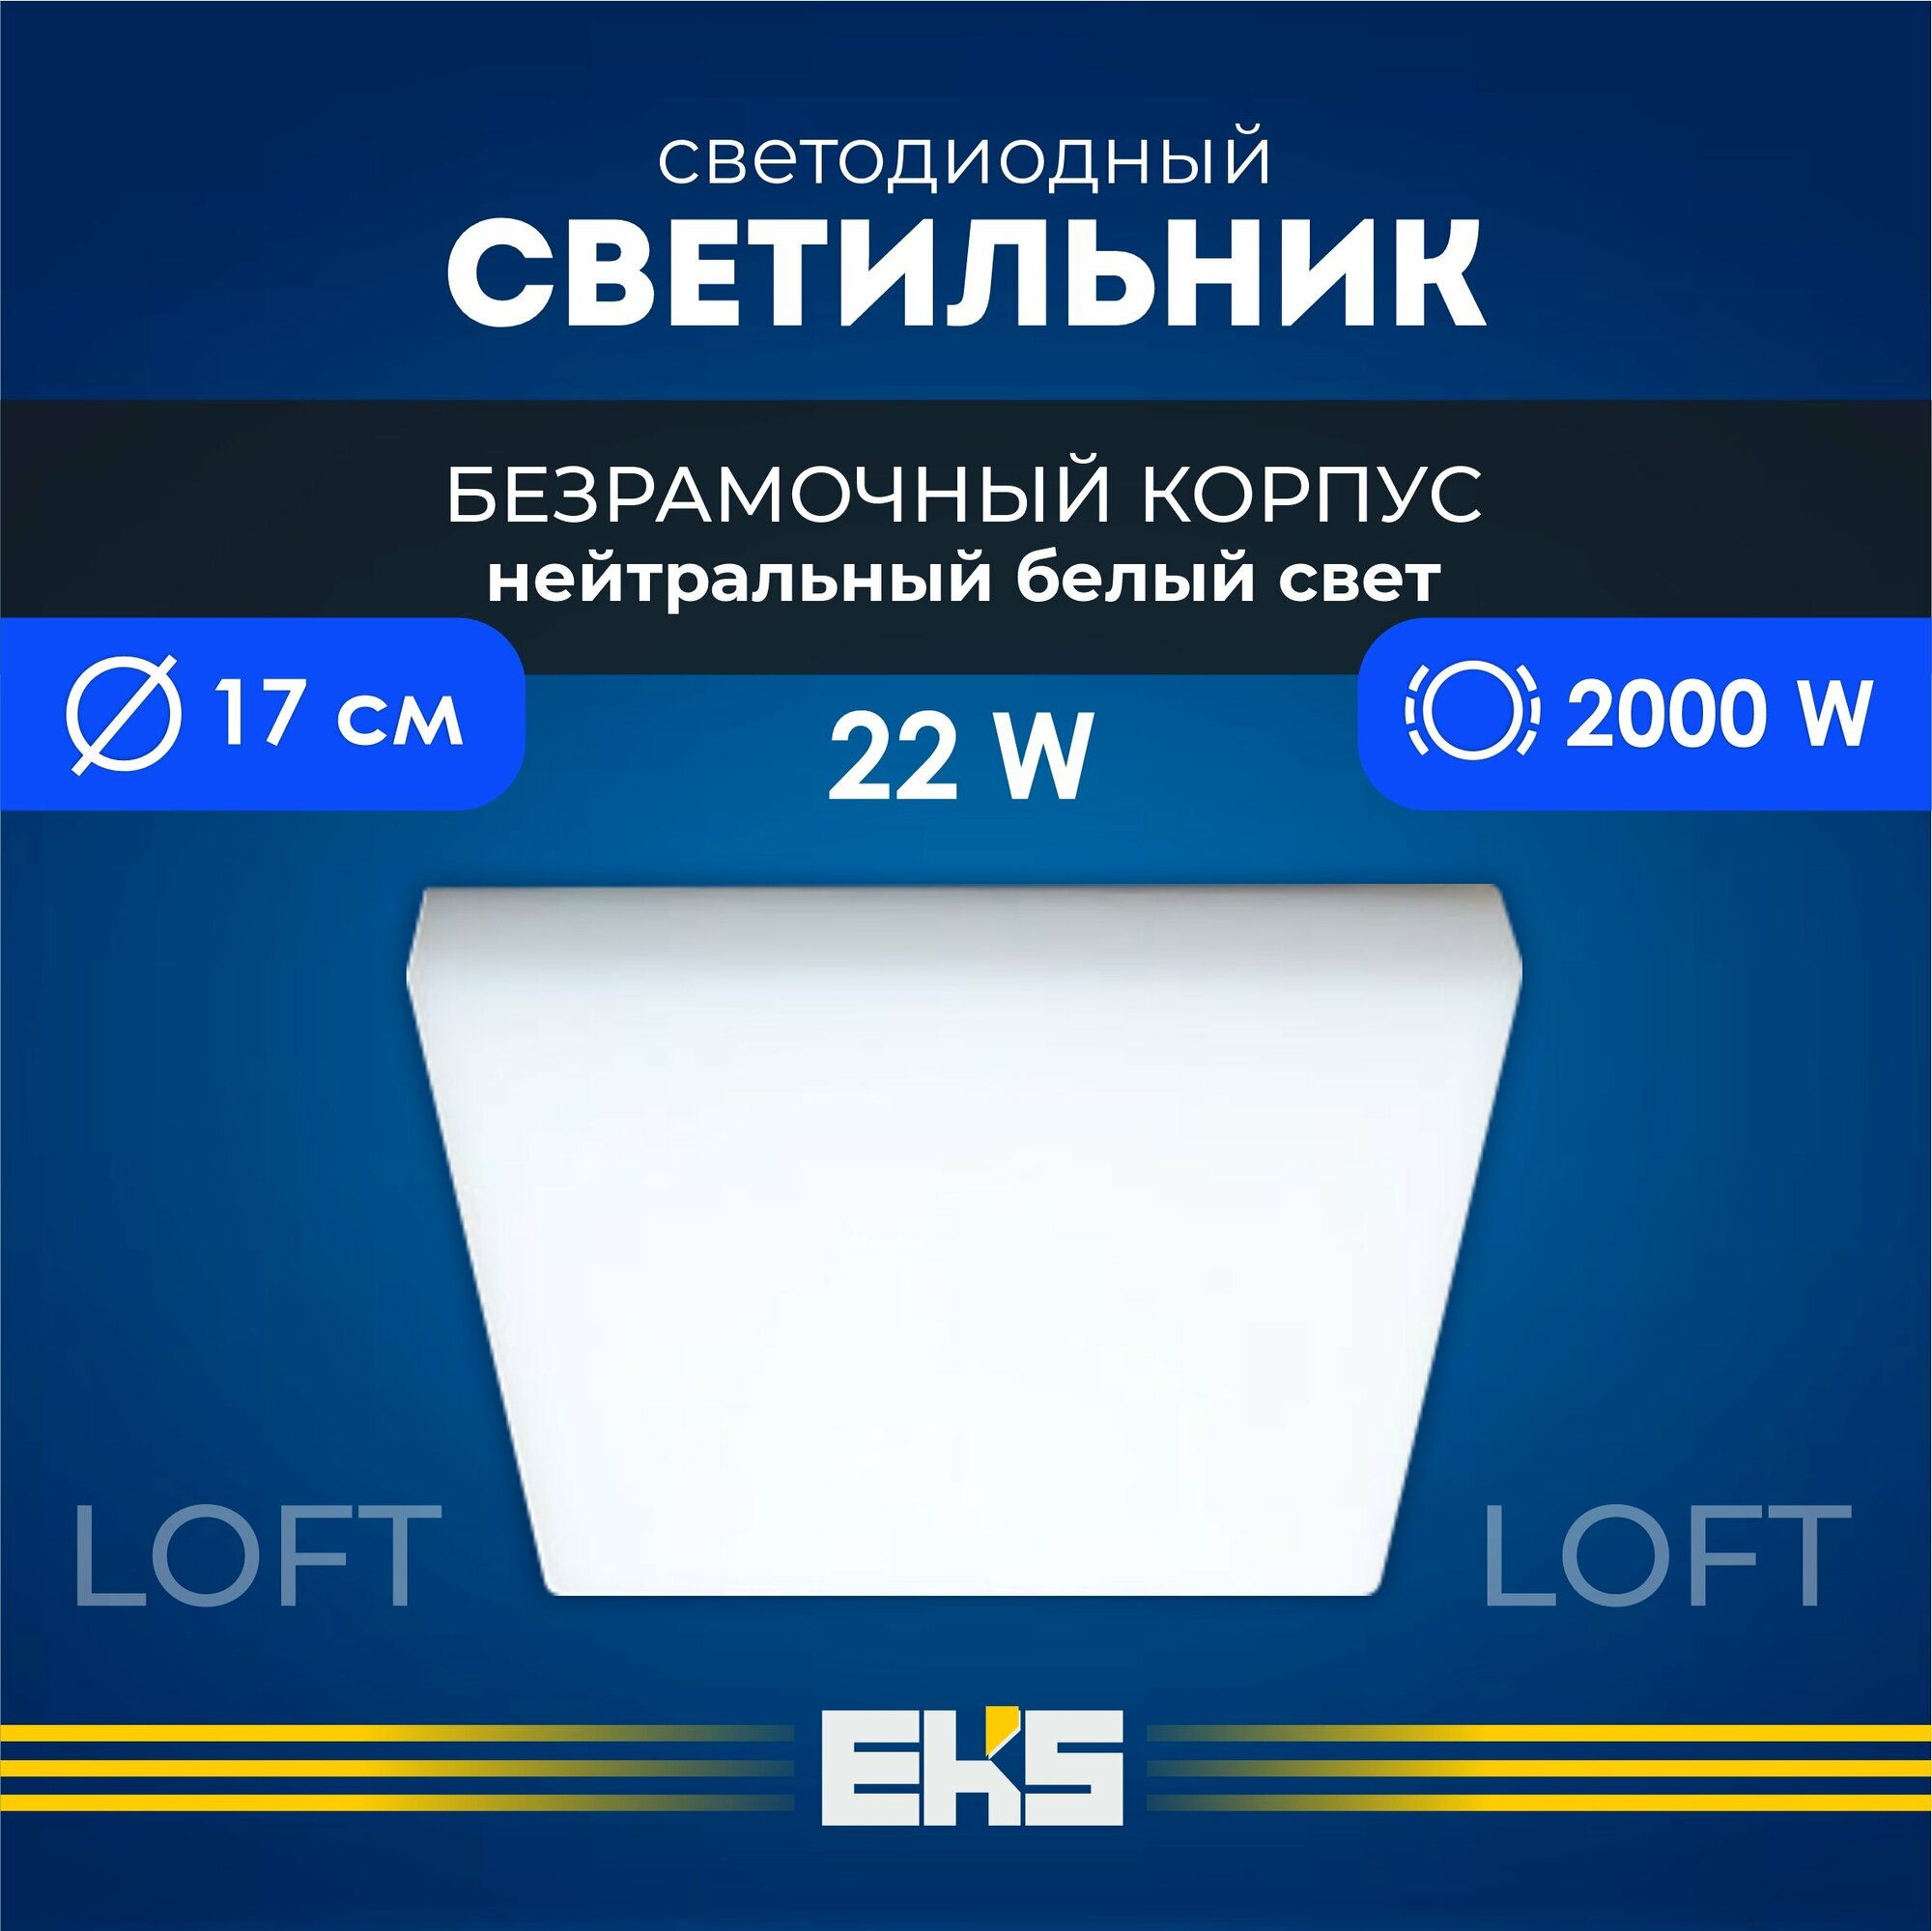 Встраиваемый светильник EKS LOFT - Светодиодная панель, LED панель квадрат безрамочная (22 Вт, 2000 Лм), 1 шт.